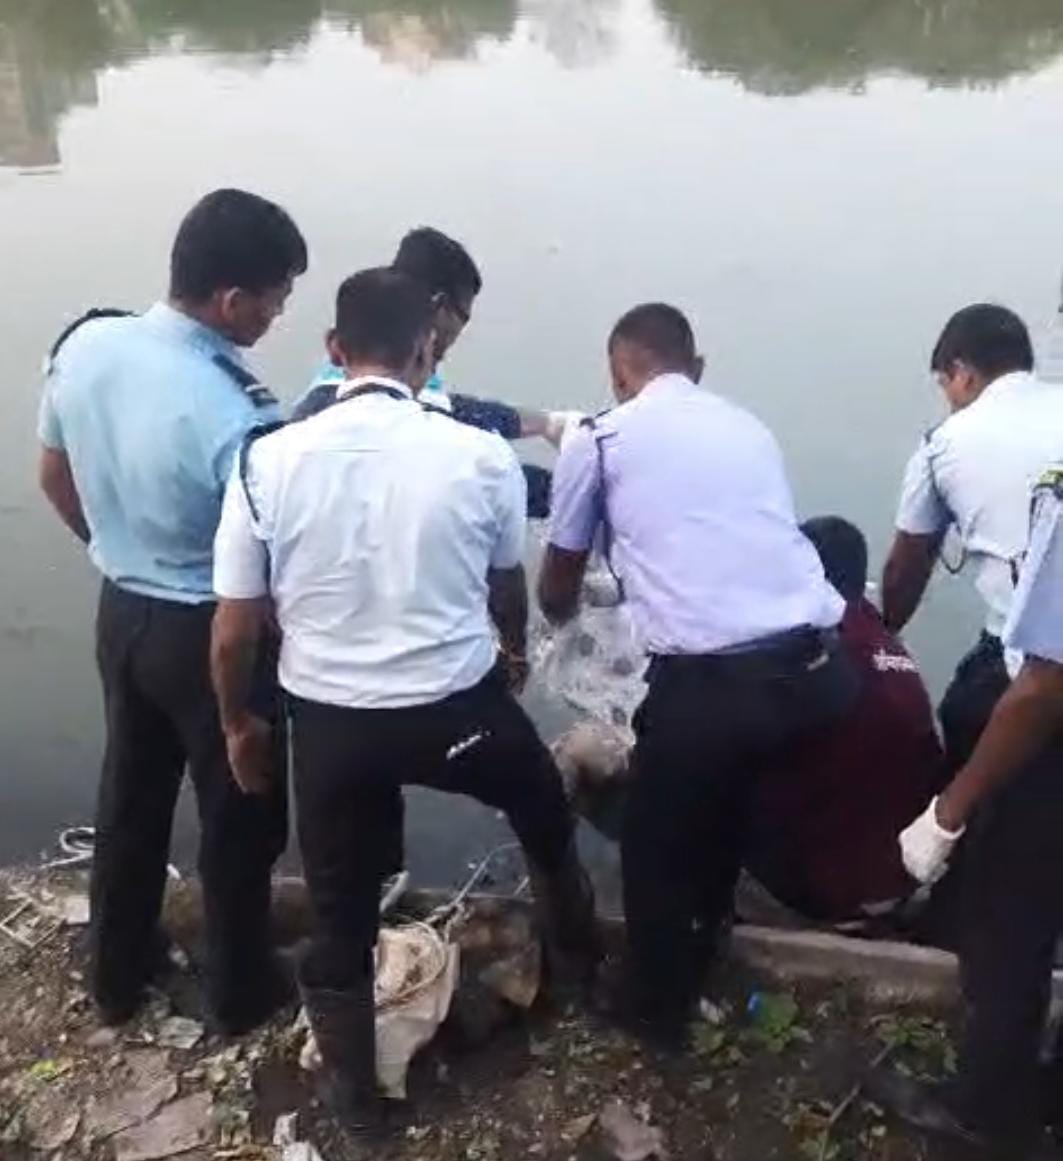 पिंपरीत पवना नदीत बुडालेल्या मुलाचा मृतदेह तीन दिवसांनी पिंपळे सौदागर येथे सापडला